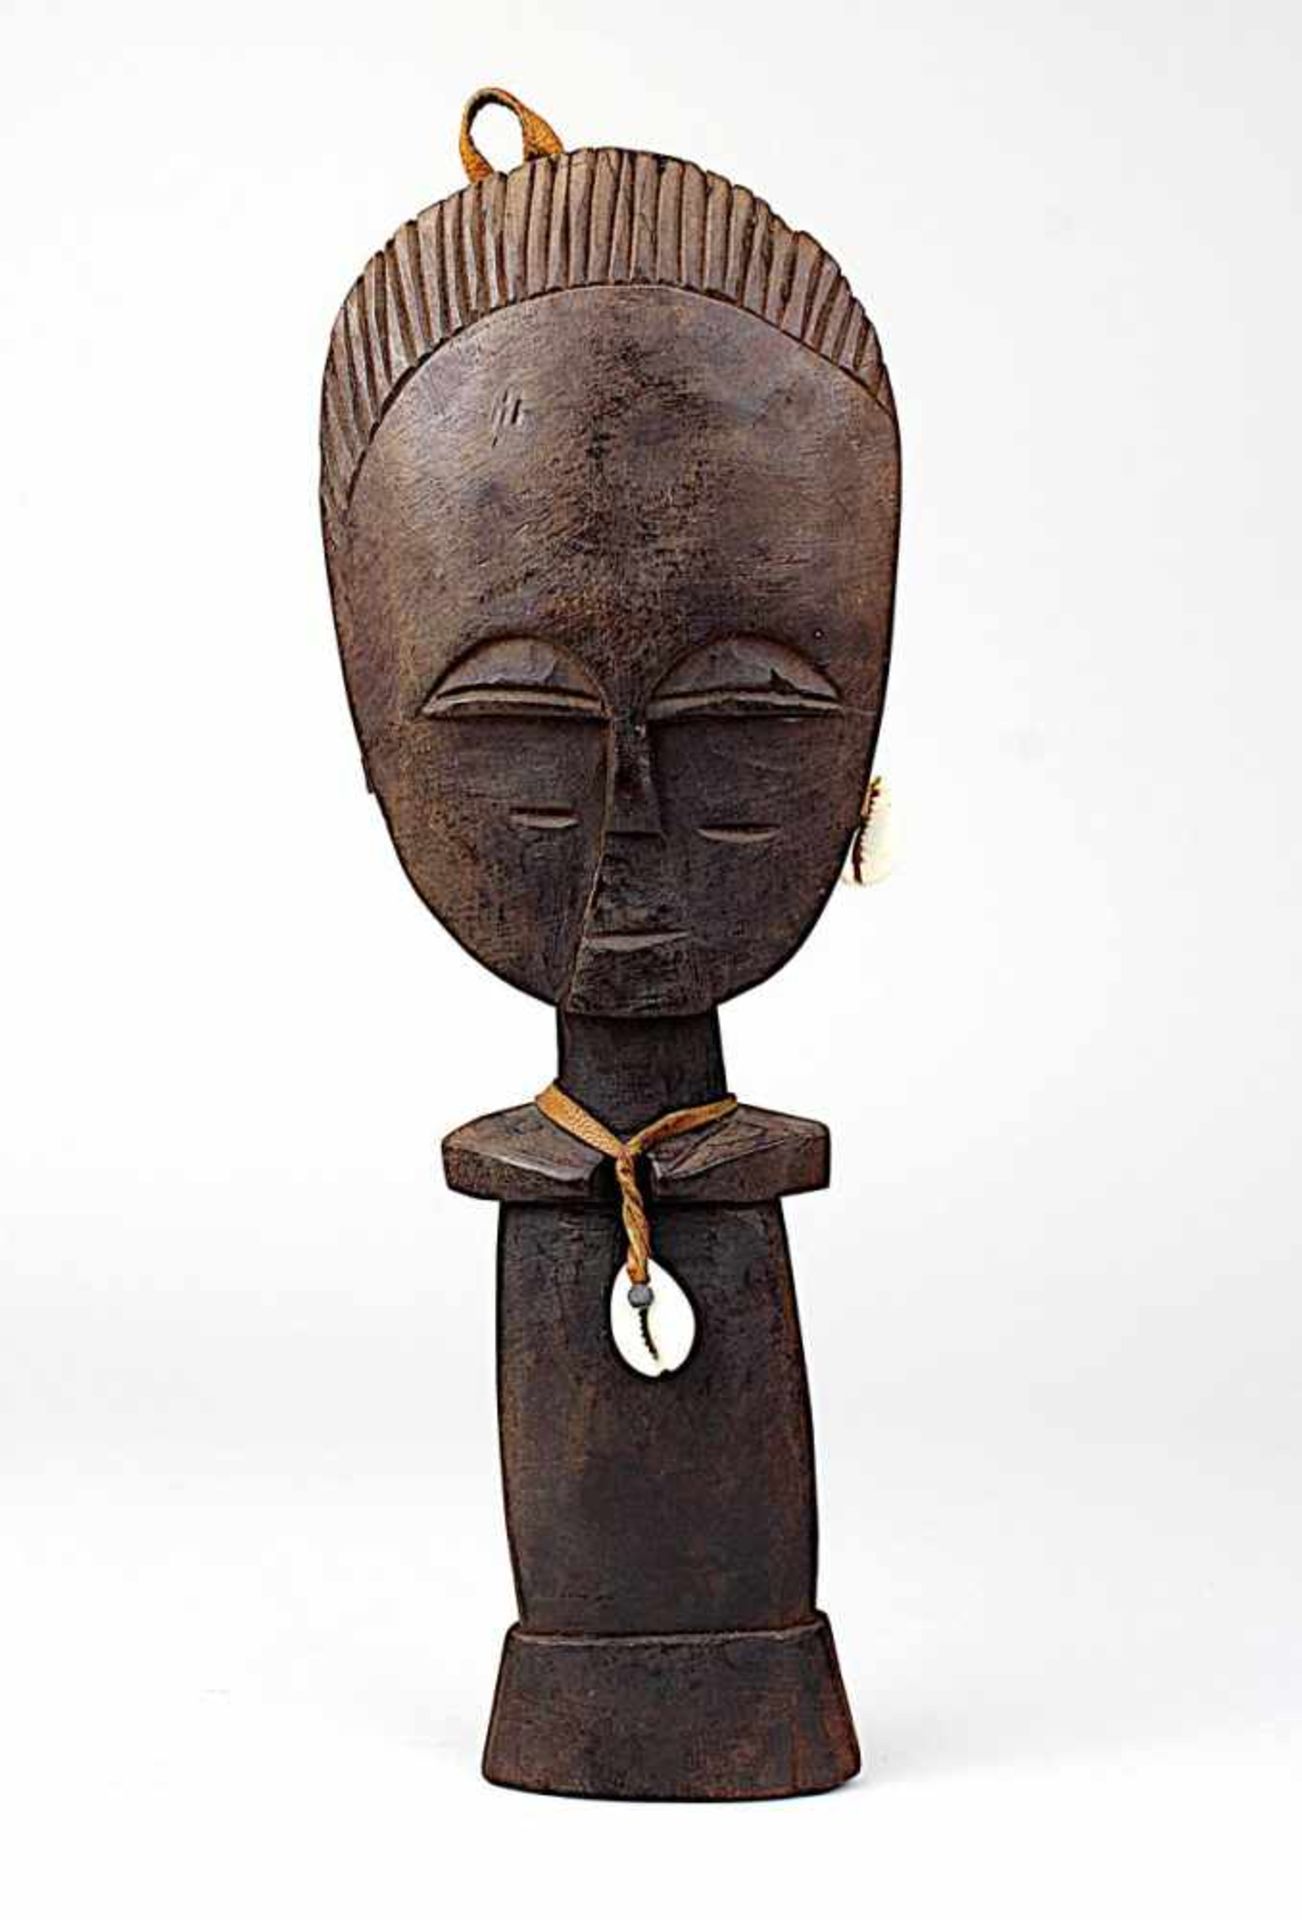 Dekorative Akuaba Fruchtbarkeits-Puppe, Ashanti, Ghana, Holz geschnitzt und dunkel gefärbt, großer